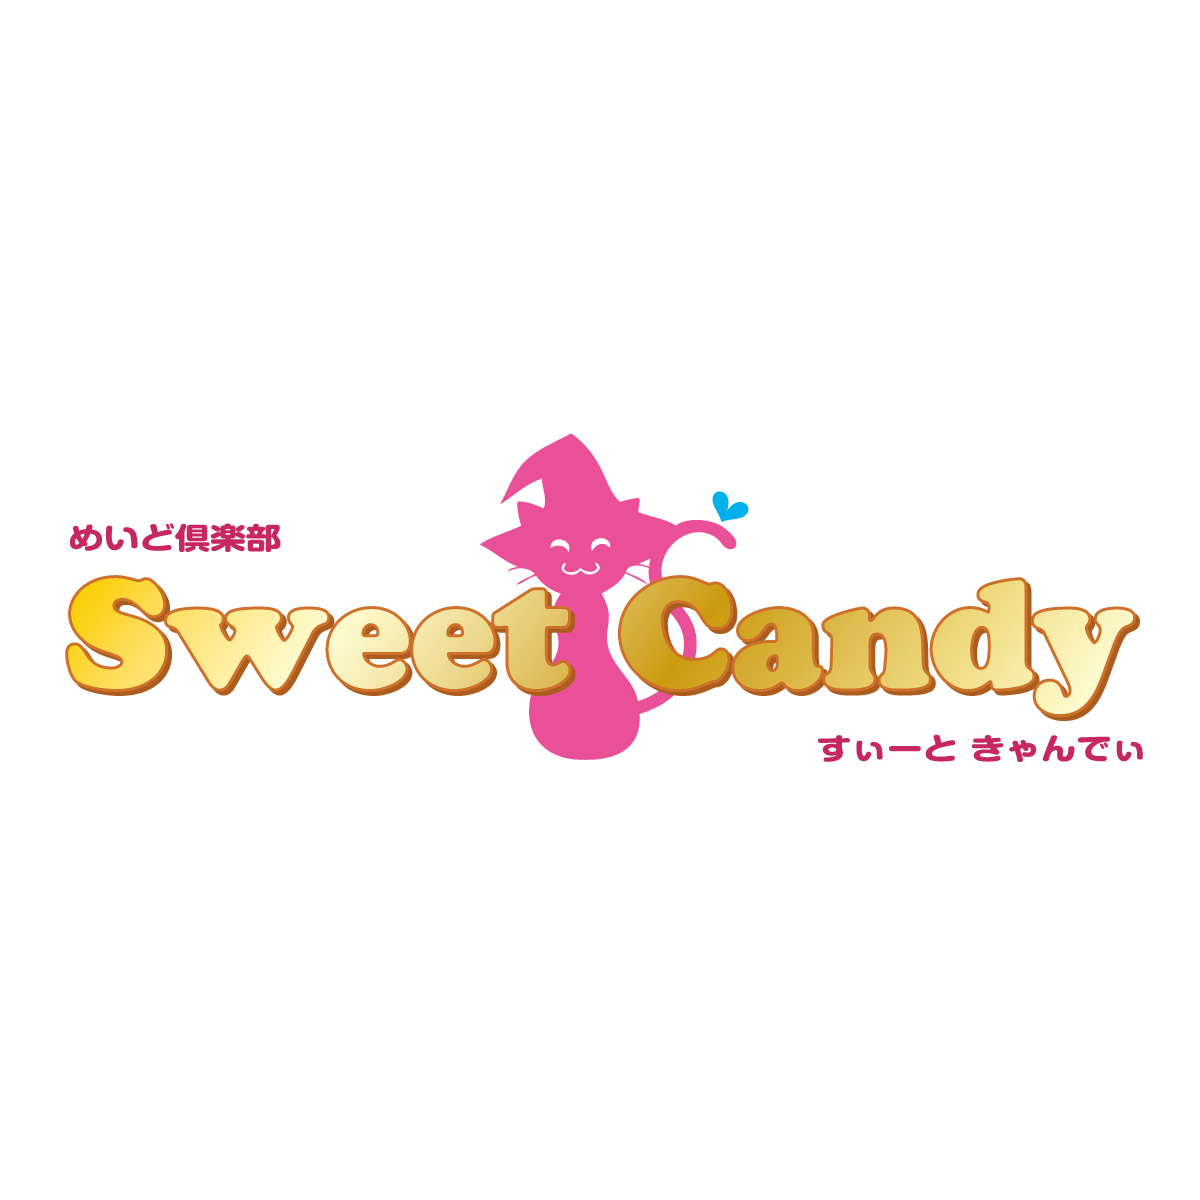 ᤤɶ Sweet Candy̿1